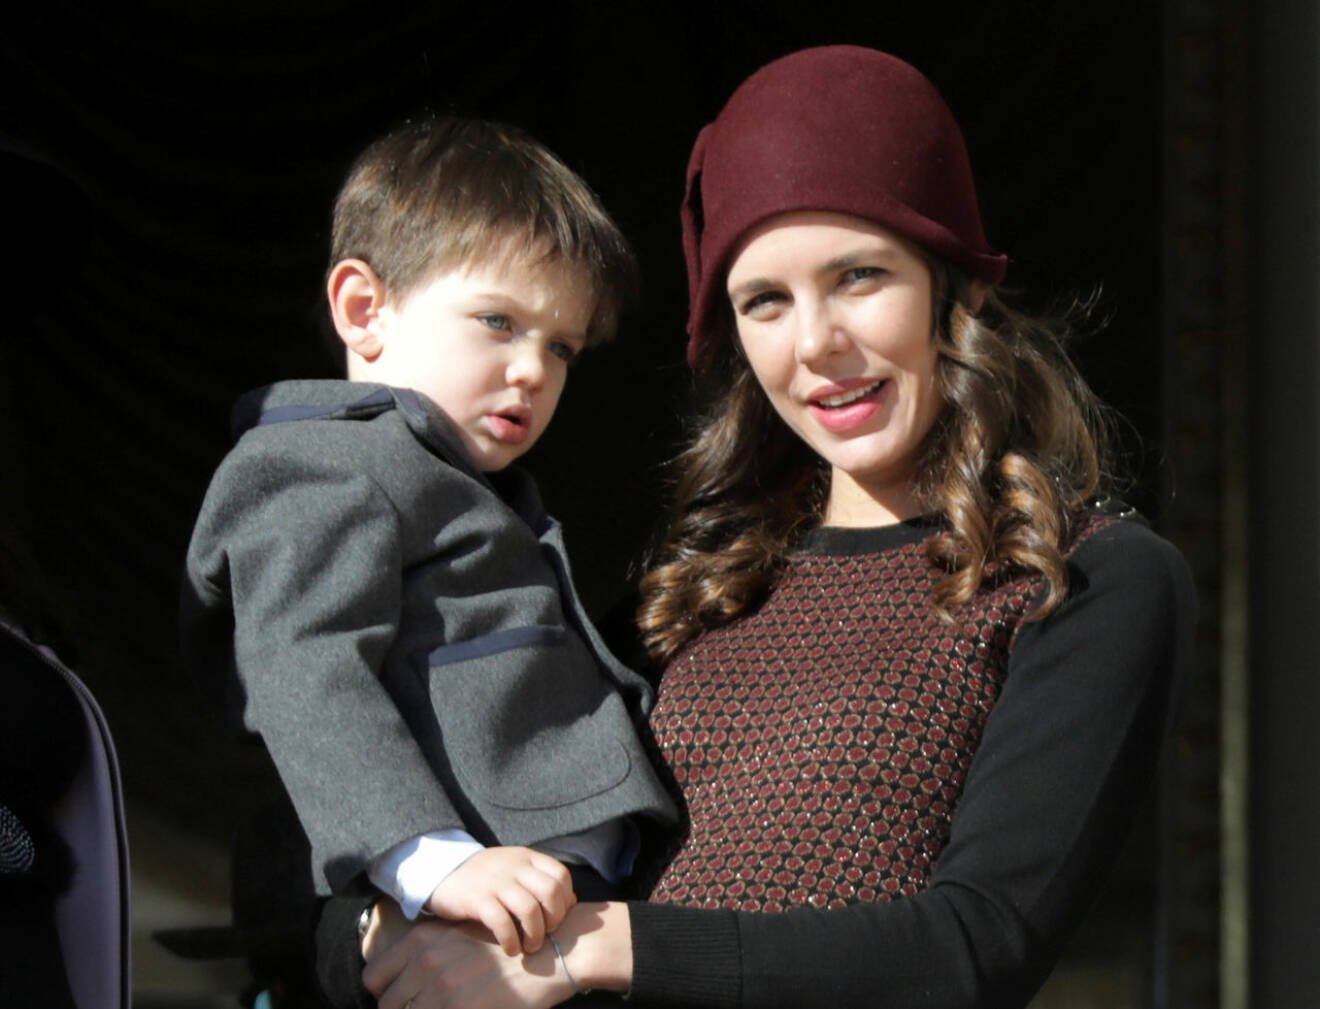 Storebror! Prinsessan Charlotte med sin 4-årige son Raphael som nu har fått en lillebror.